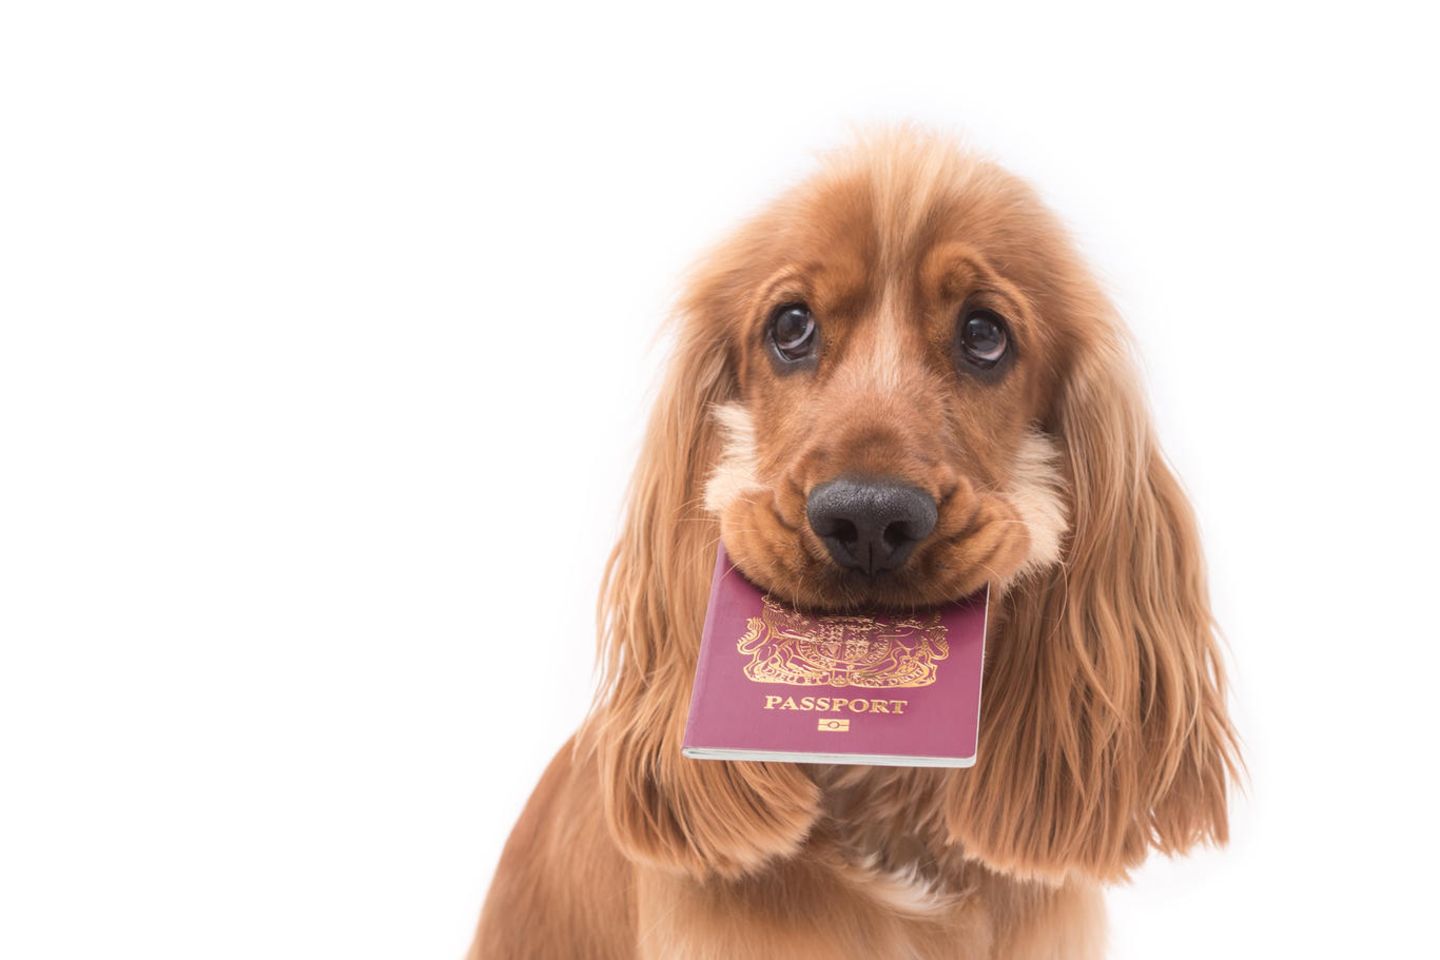 Urlaub zerstört: Kein Urlaub für Familie, weil Hund Reisepässe gefressen hat